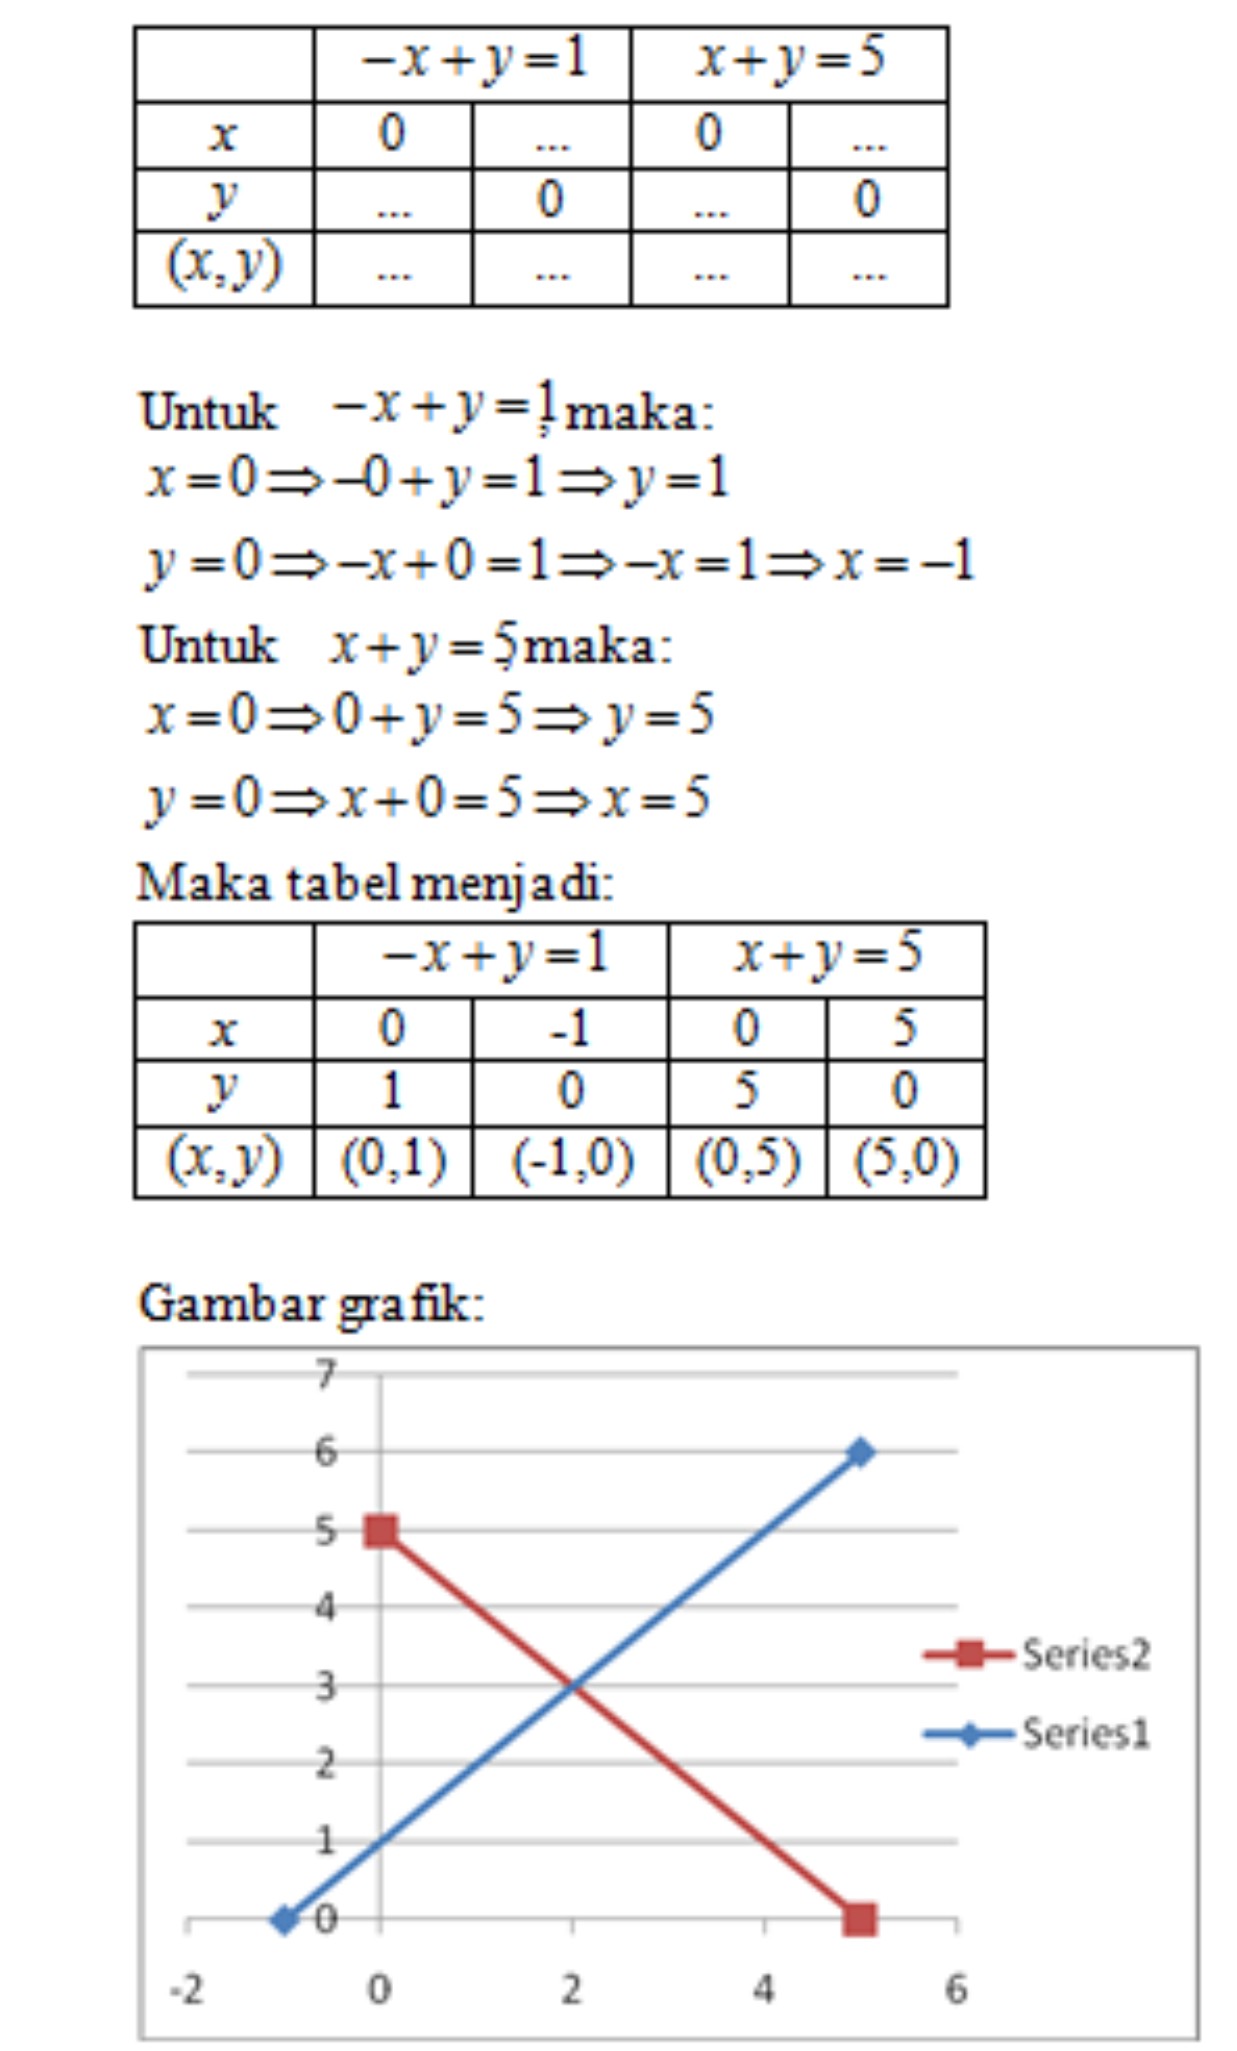 Contoh Grafik Persamaan Linear Satu Variabel - J K A T L V